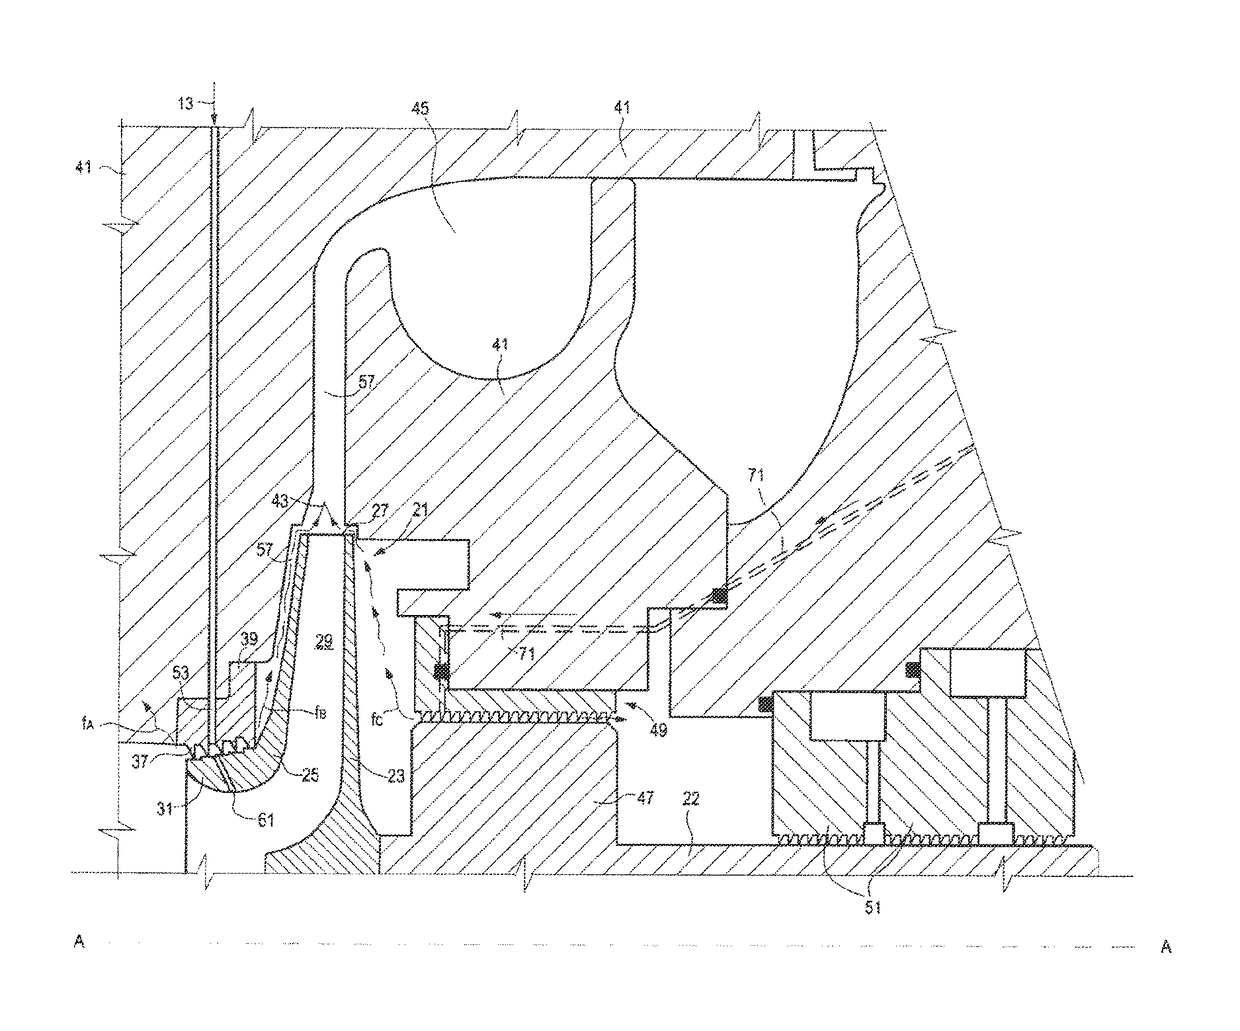 Centrifugal compressor impeller cooling